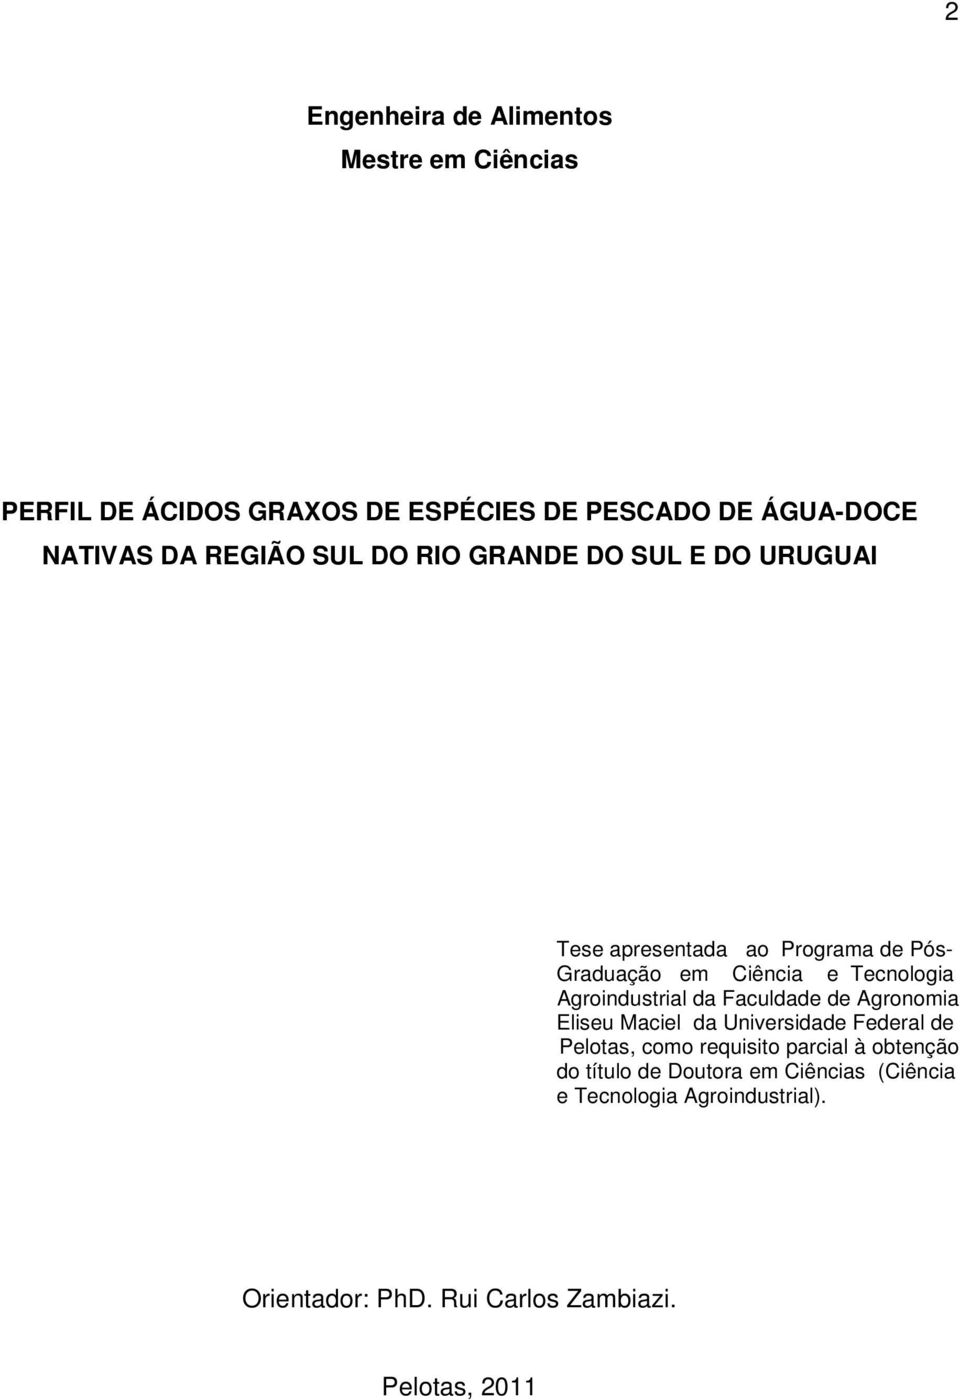 Agroindustrial da Faculdade de Agronomia Eliseu Maciel da Universidade Federal de Pelotas, como requisito parcial à